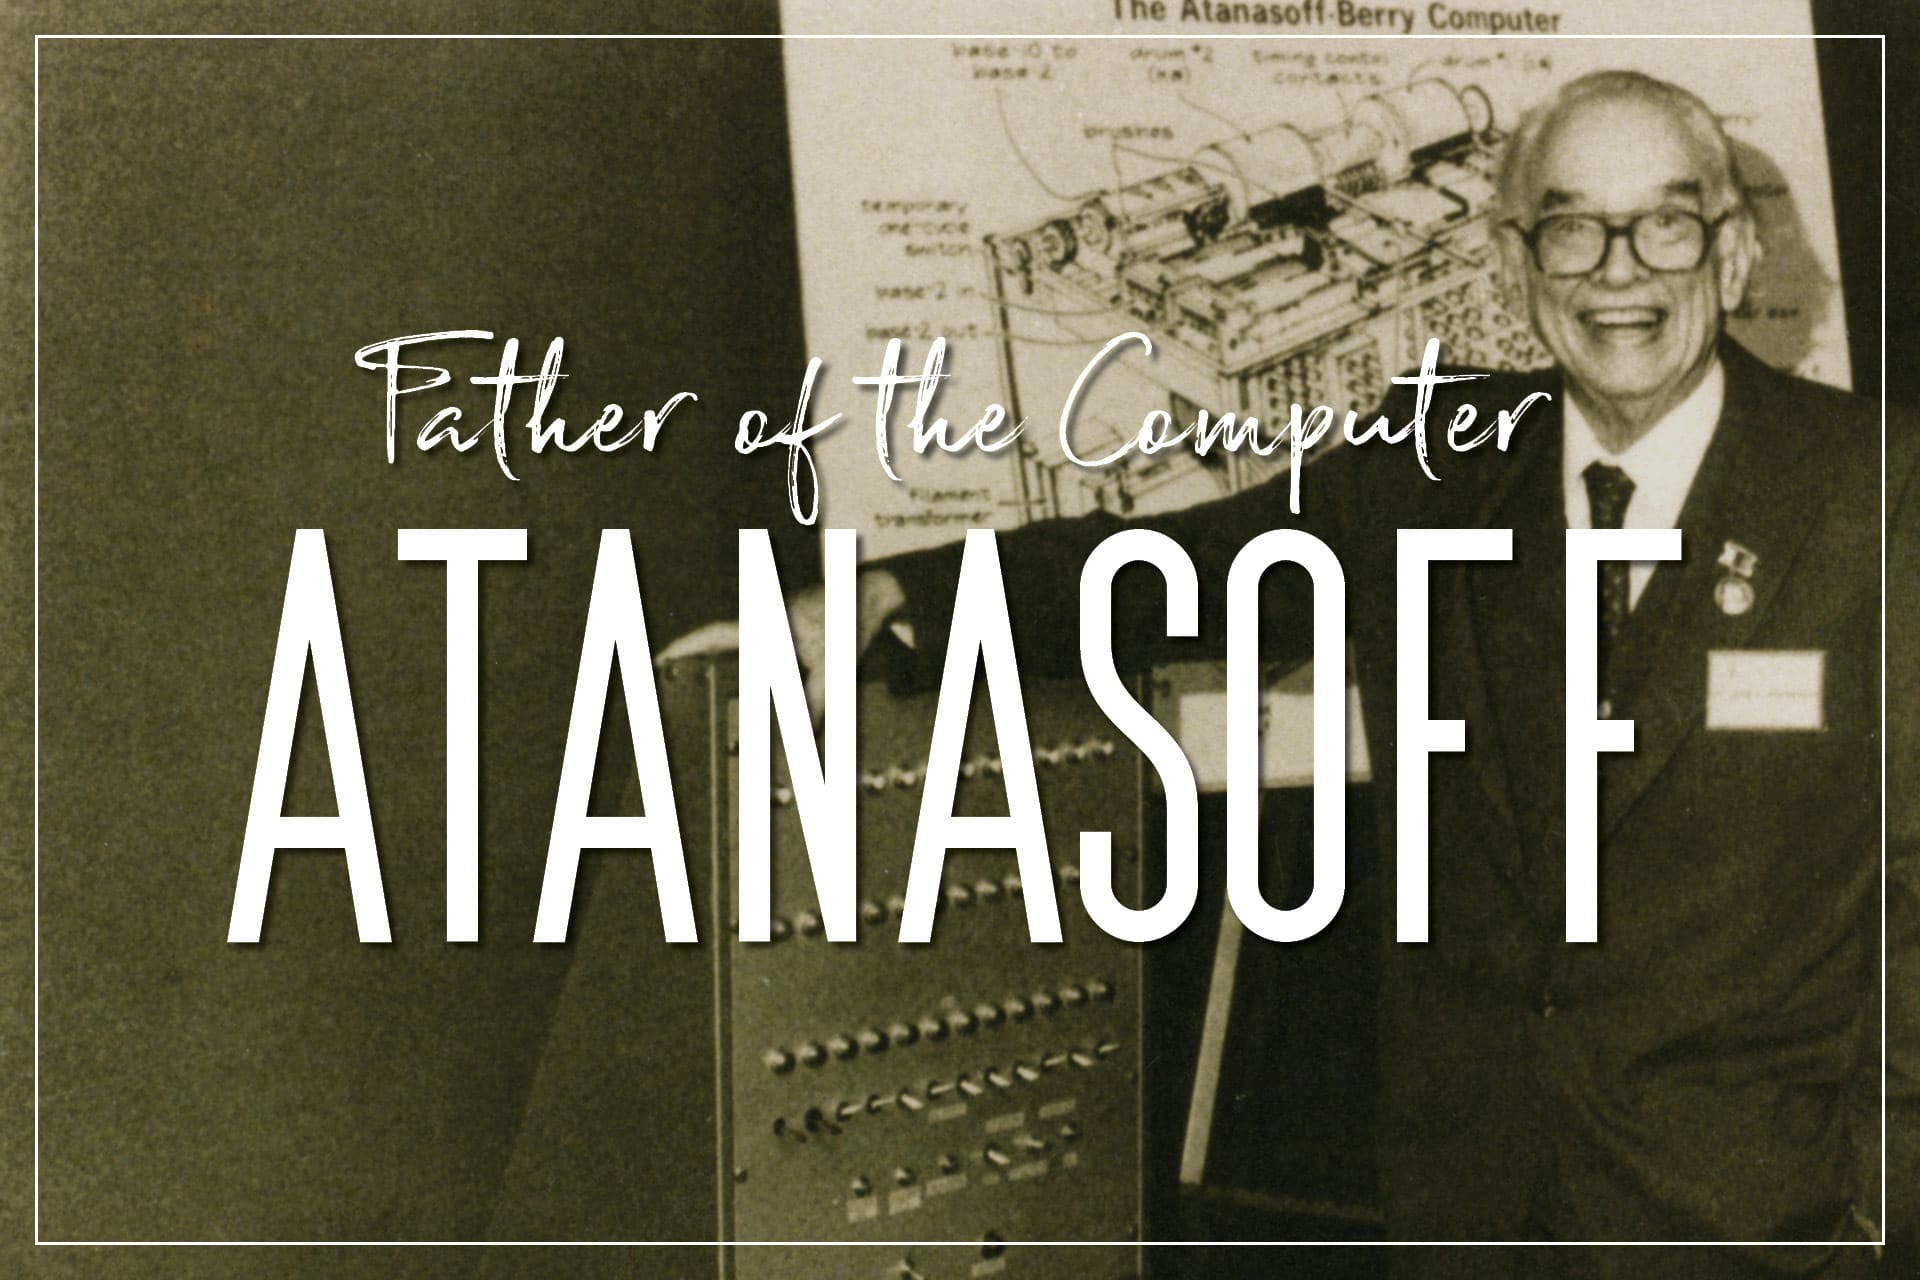 John Atanasoff: Father of the Computer